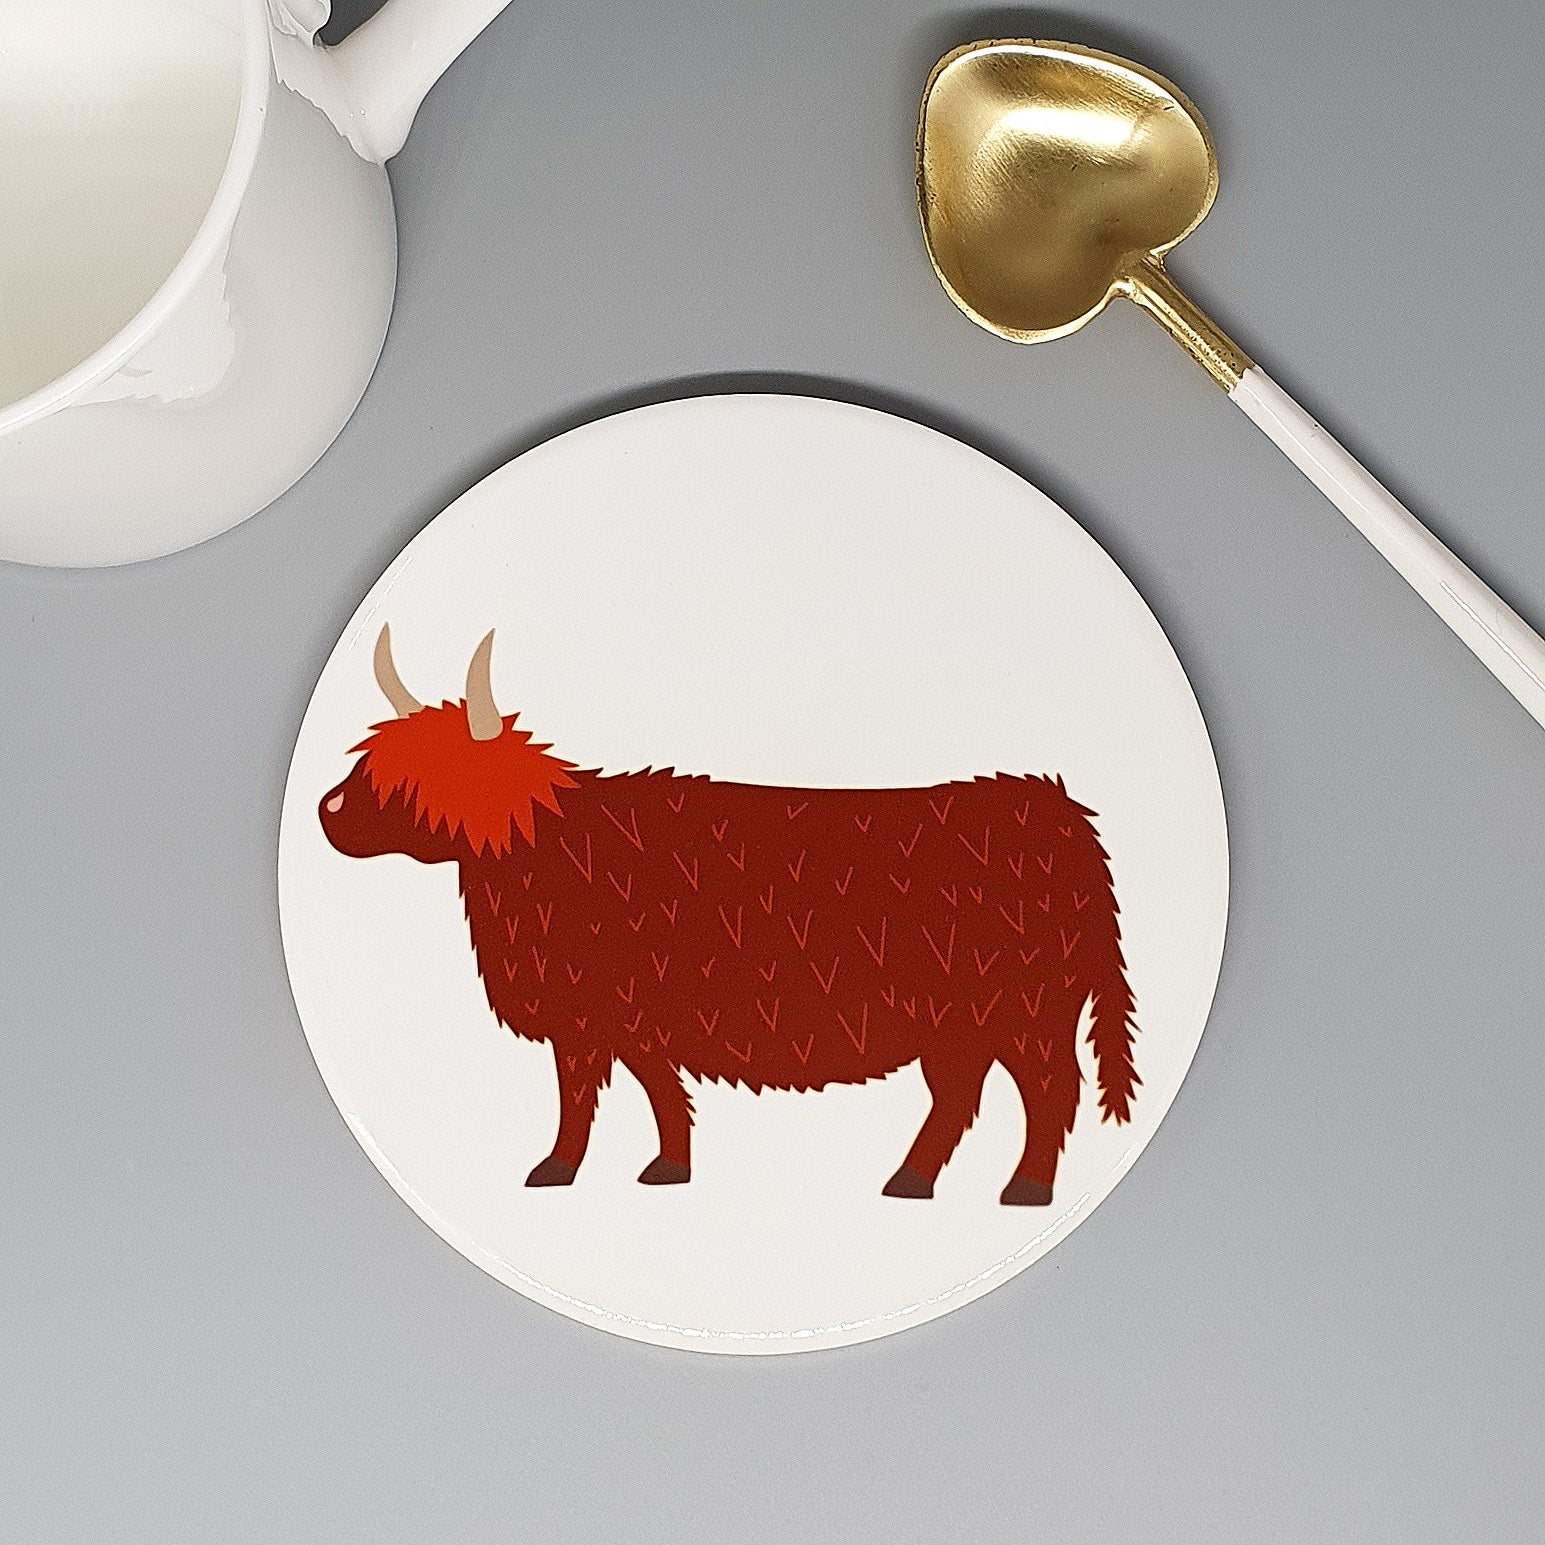 Highland Cow large ceramic coaster